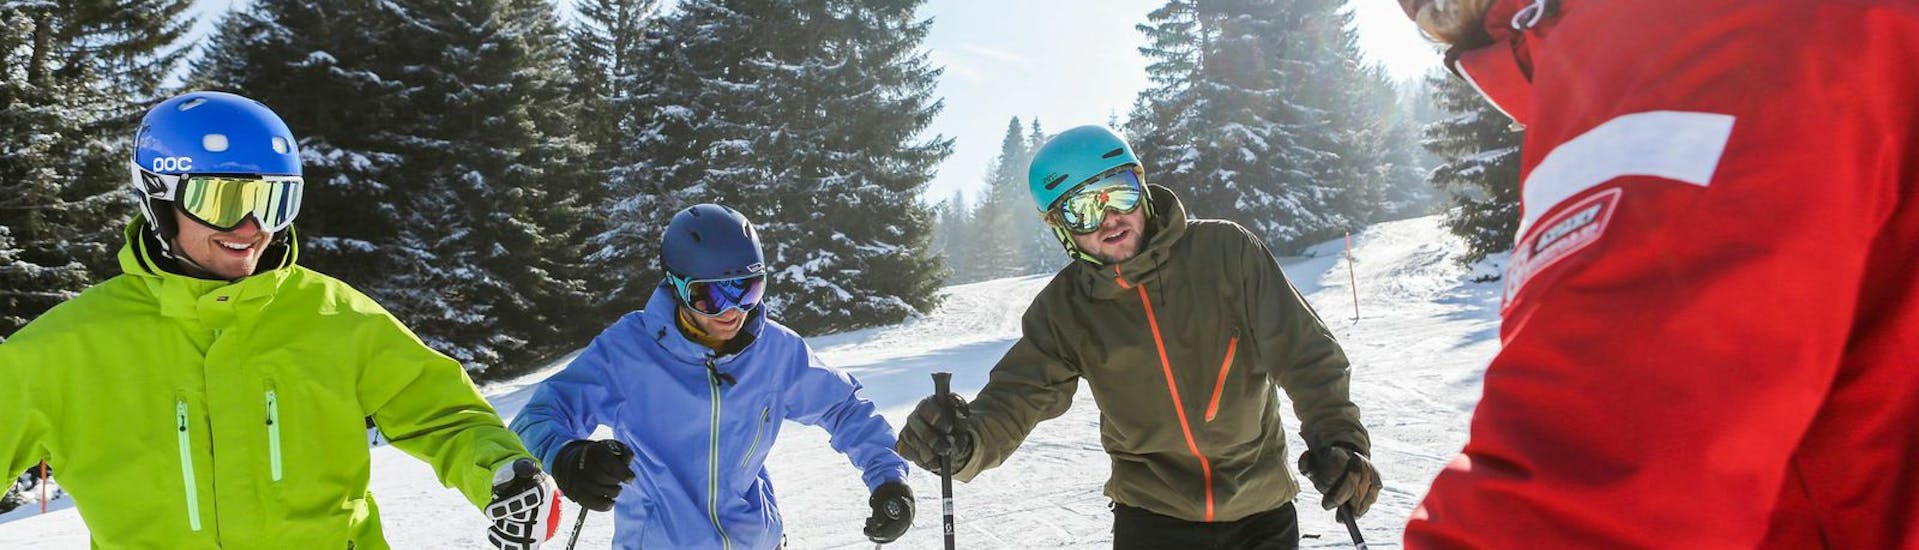 Lezioni di sci per adulti a partire da 16 anni con esperienza.